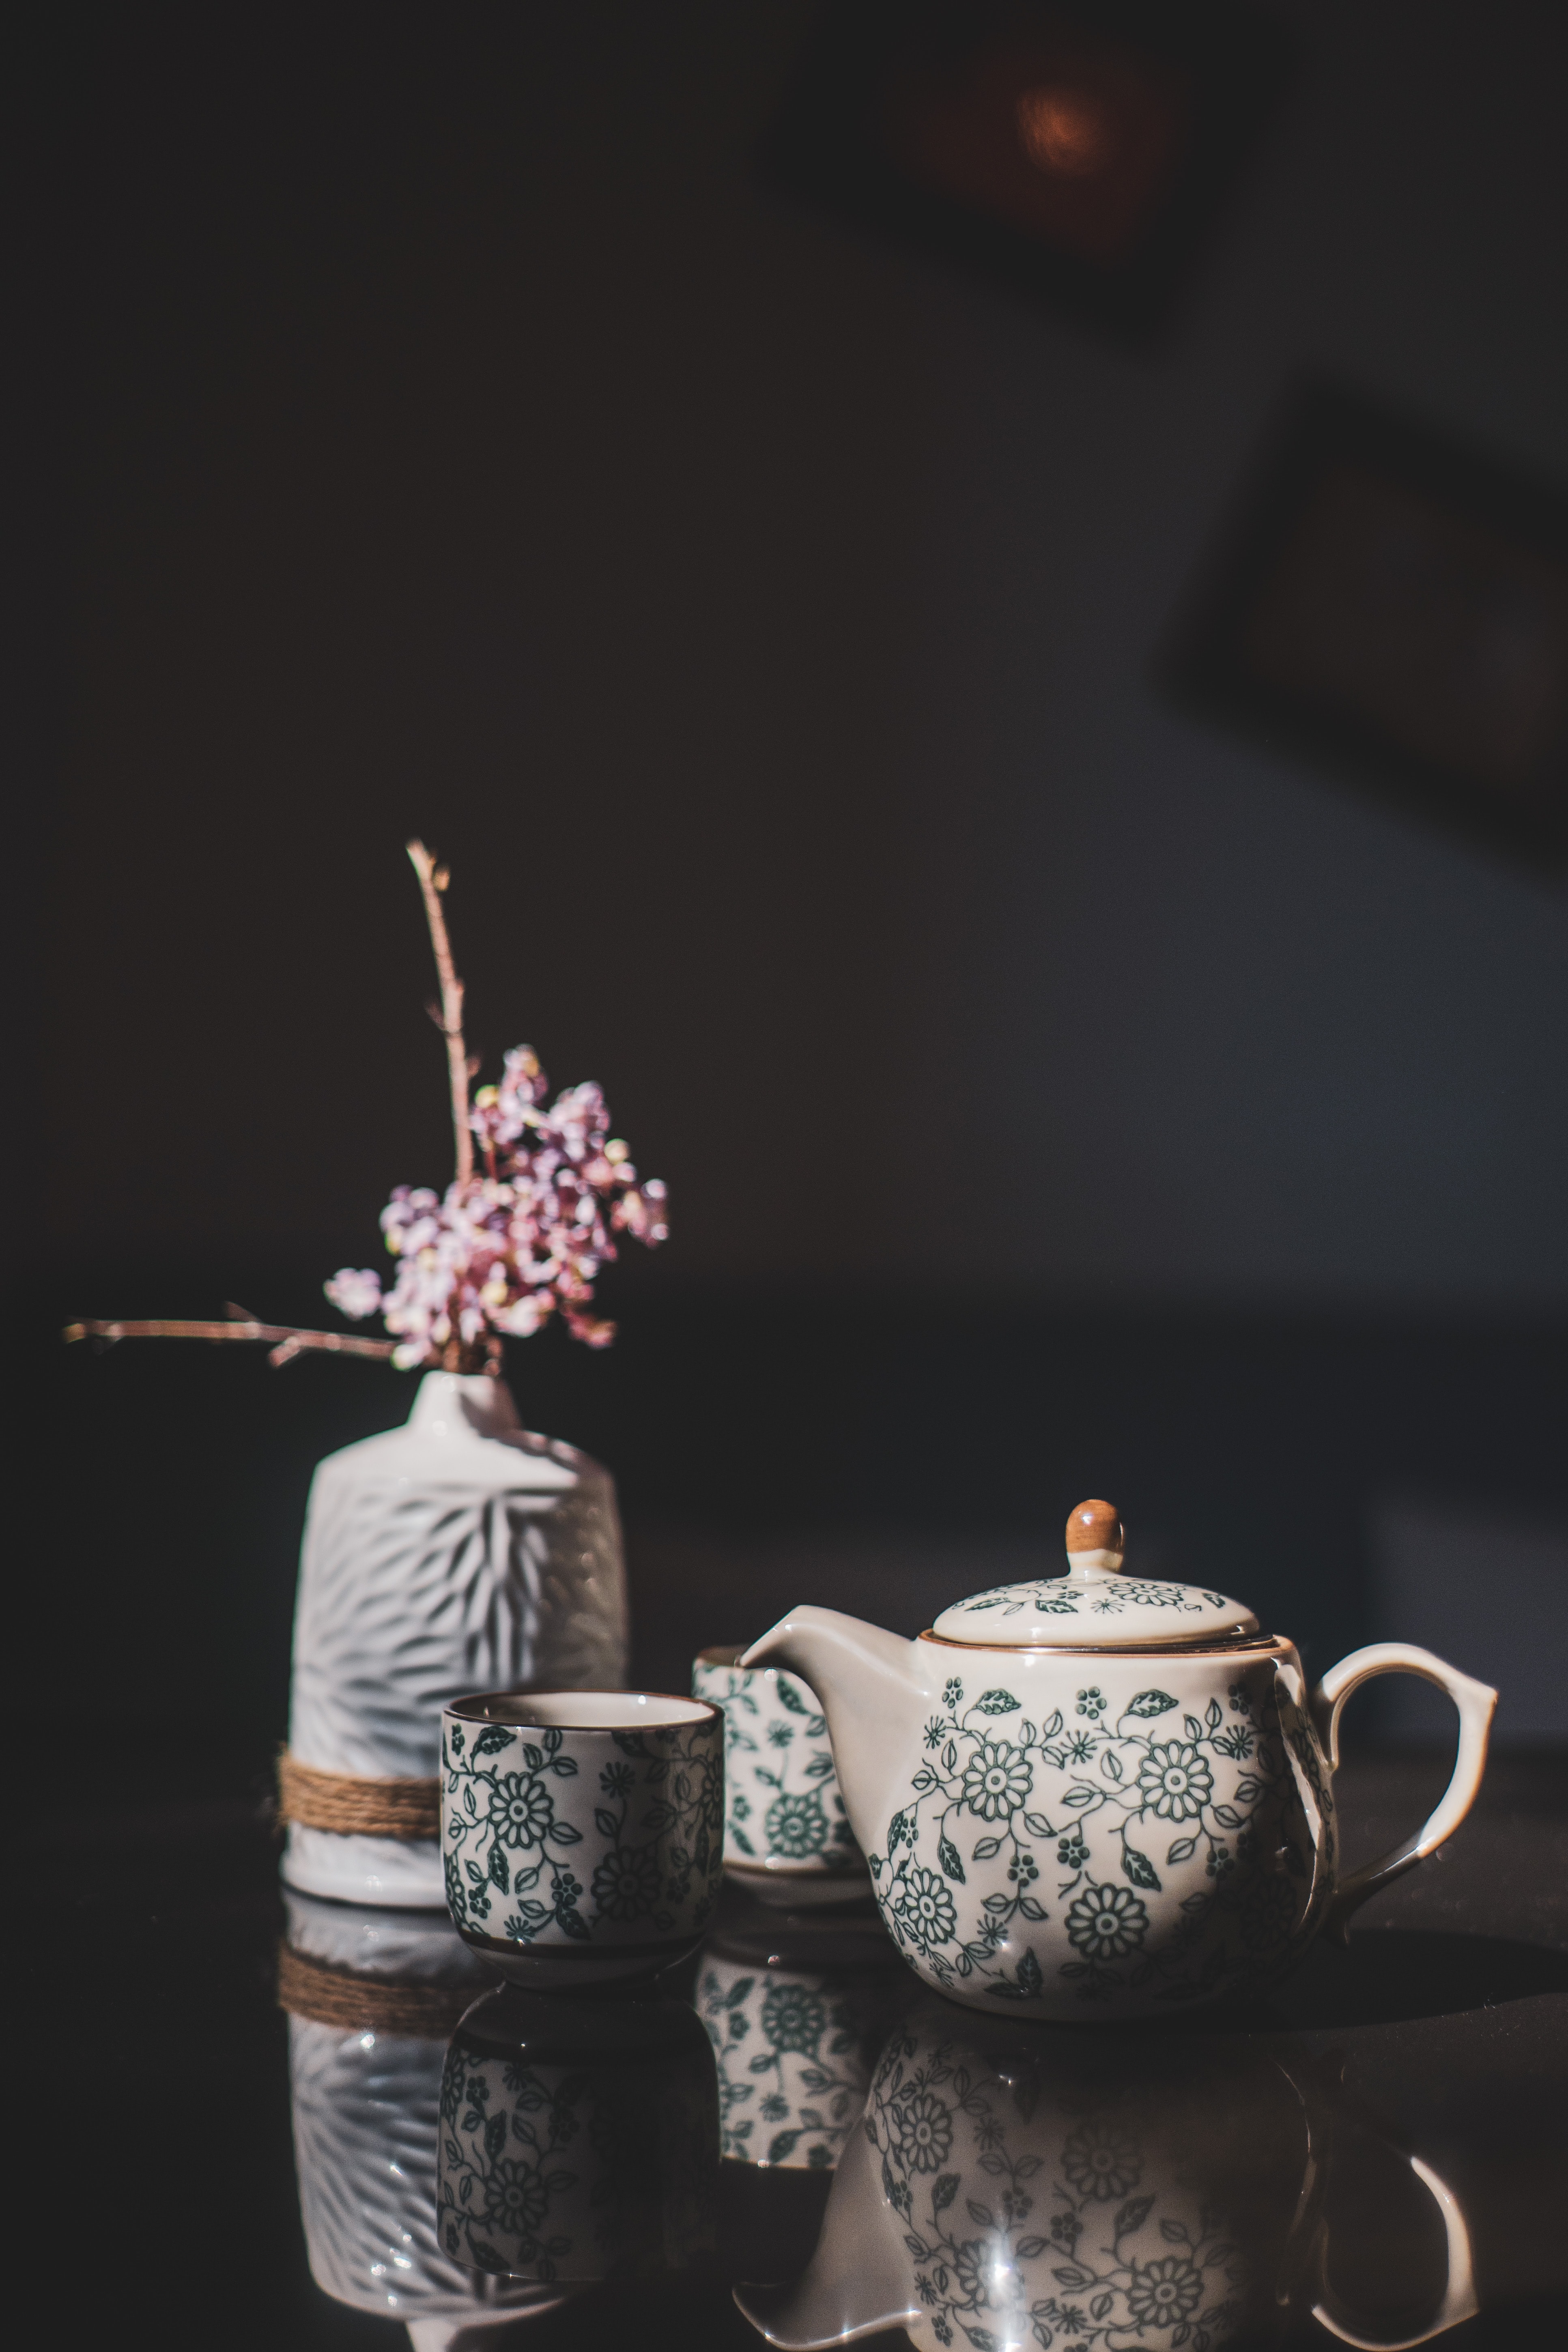 flowers, cups, miscellanea, miscellaneous, vase, decor, teapot, kettle